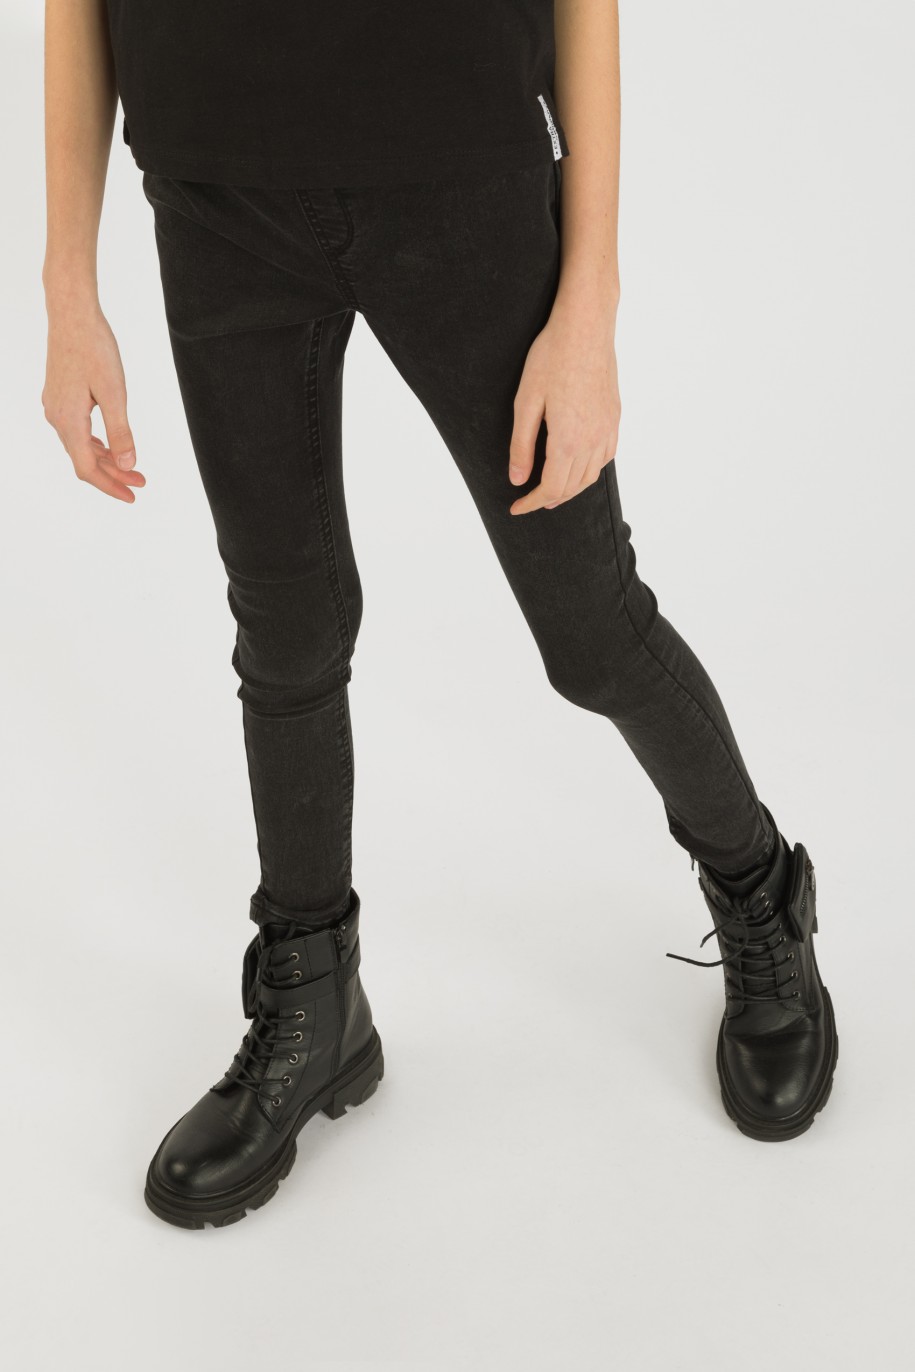 Czarne spodnie jegginsy dla dziewczyny - 33124